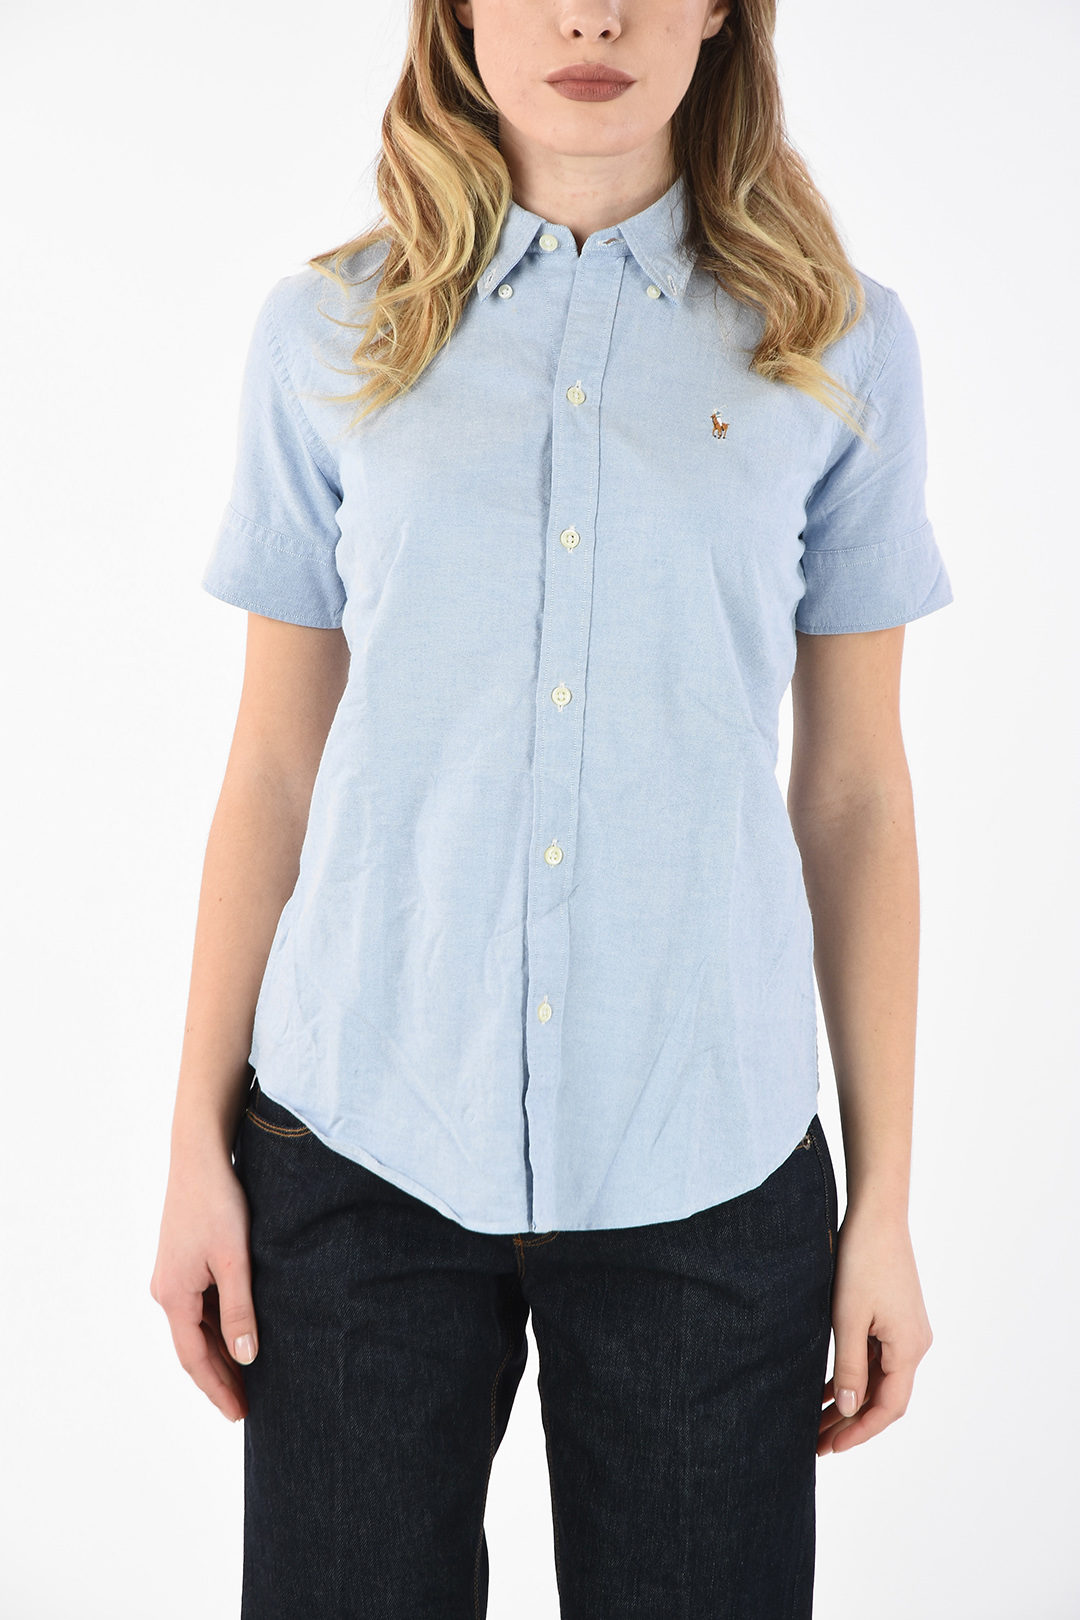 Polo Ralph Lauren button-down collar shirt women - Glamood Outlet